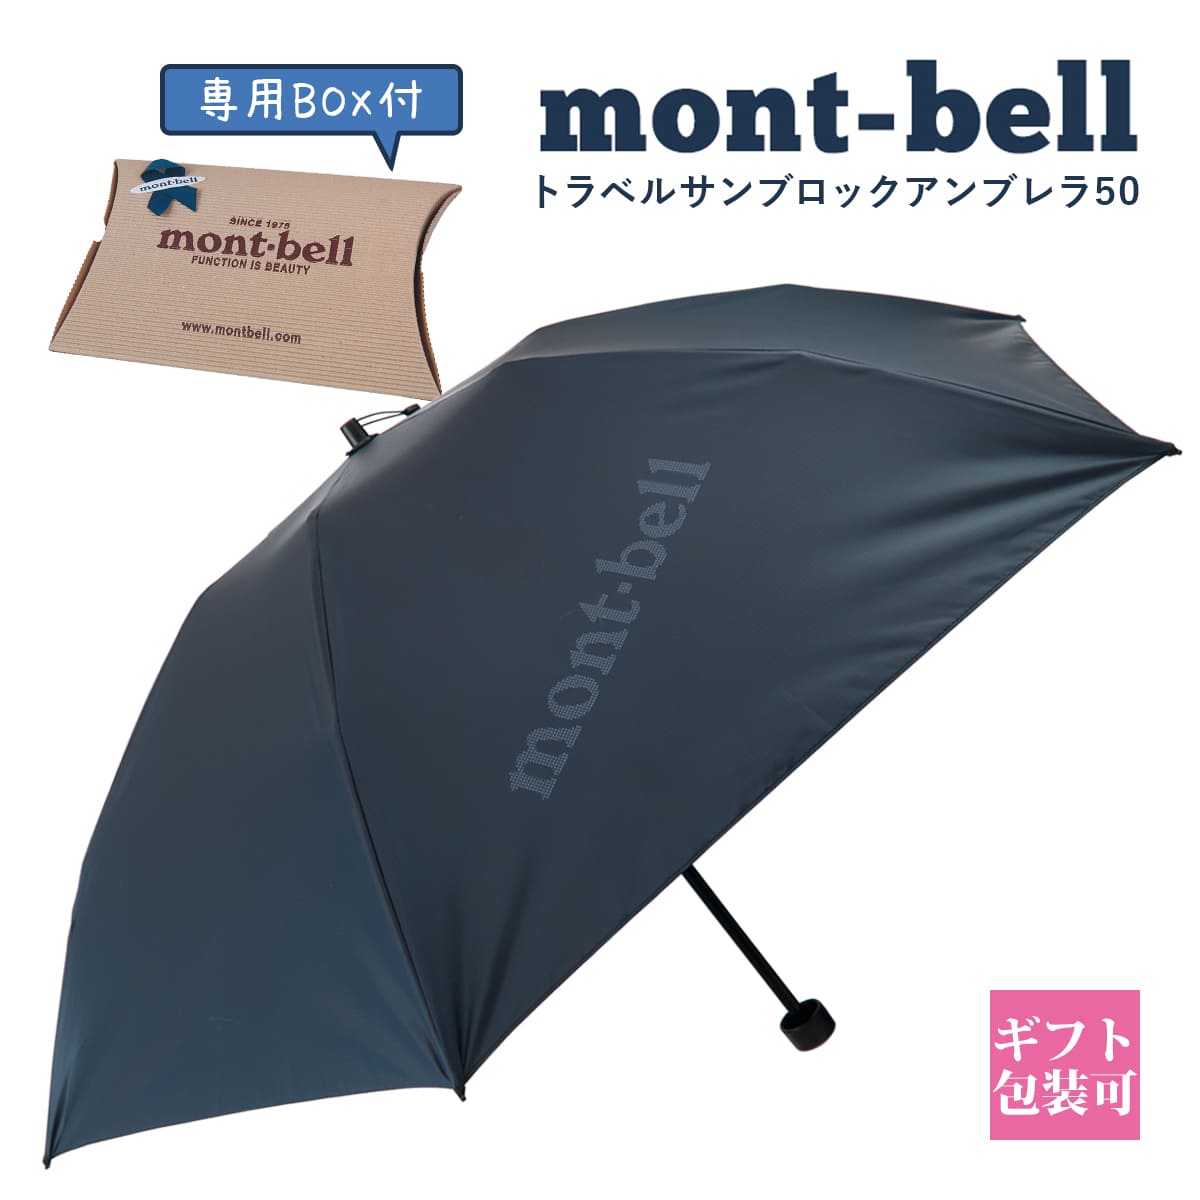 モンベル 日傘 サンブロックアンブレラ mont-bell 